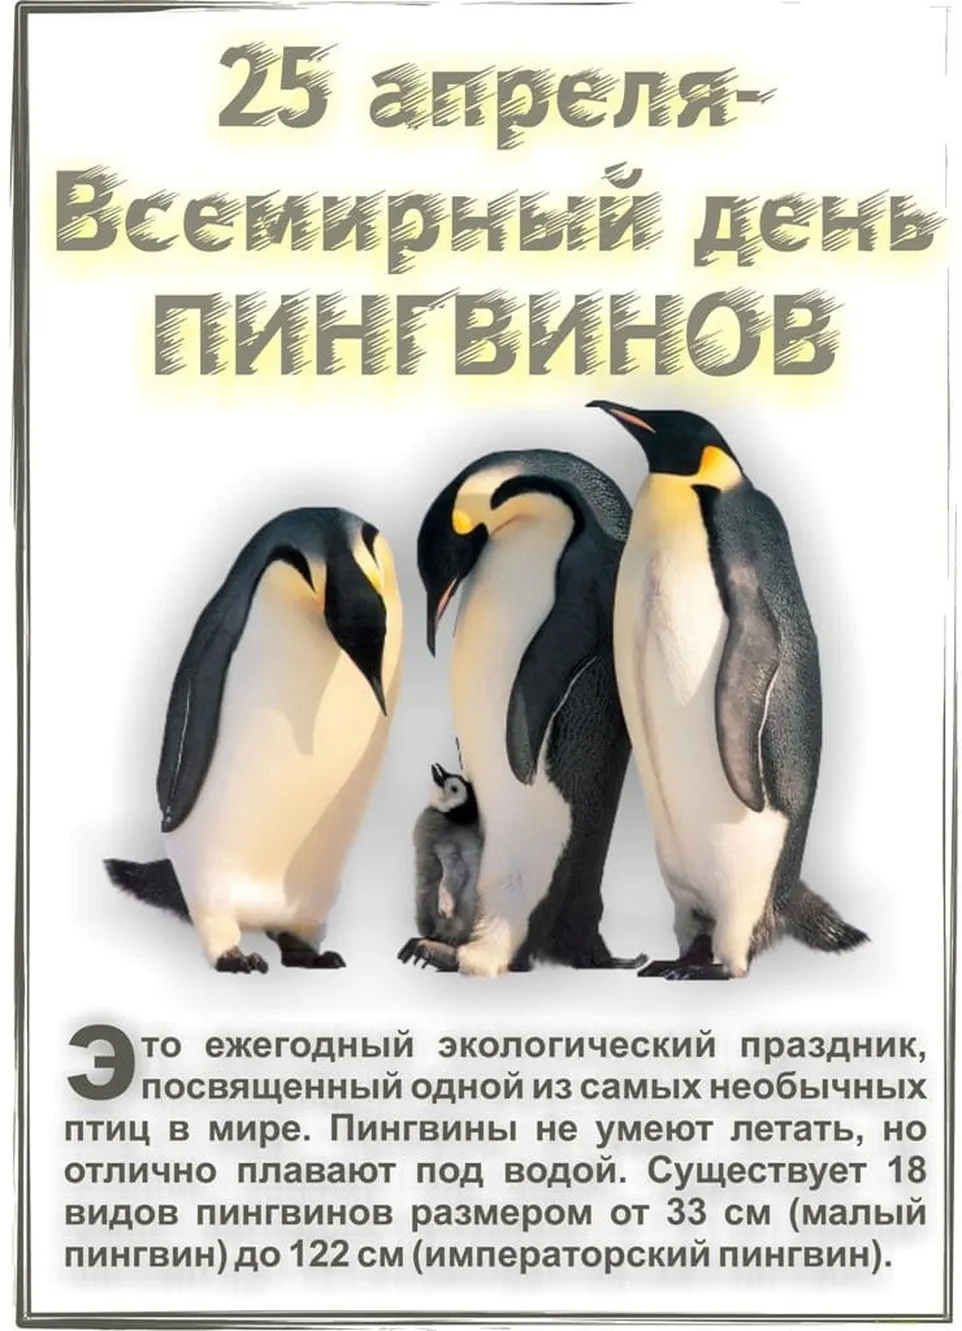 Когда отмечают Международный день пингвинов?